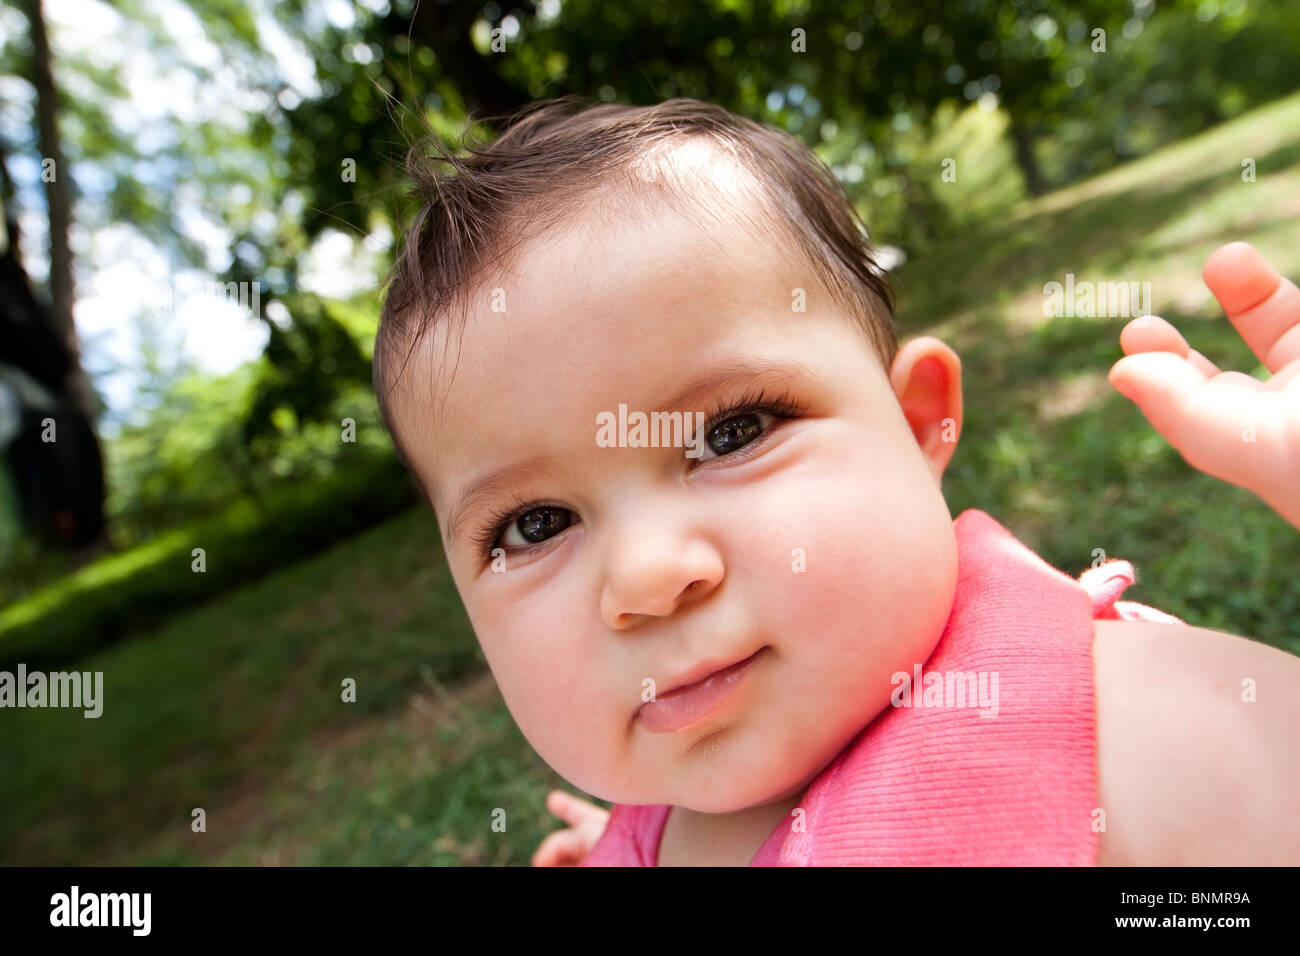 Nette Karikatur verzerrt lustig Baby Gesicht mit großen Pausbacken kaukasischen Hispanic Kleinkind Mädchen mit glänzenden Augen in einem Park. Stockfoto